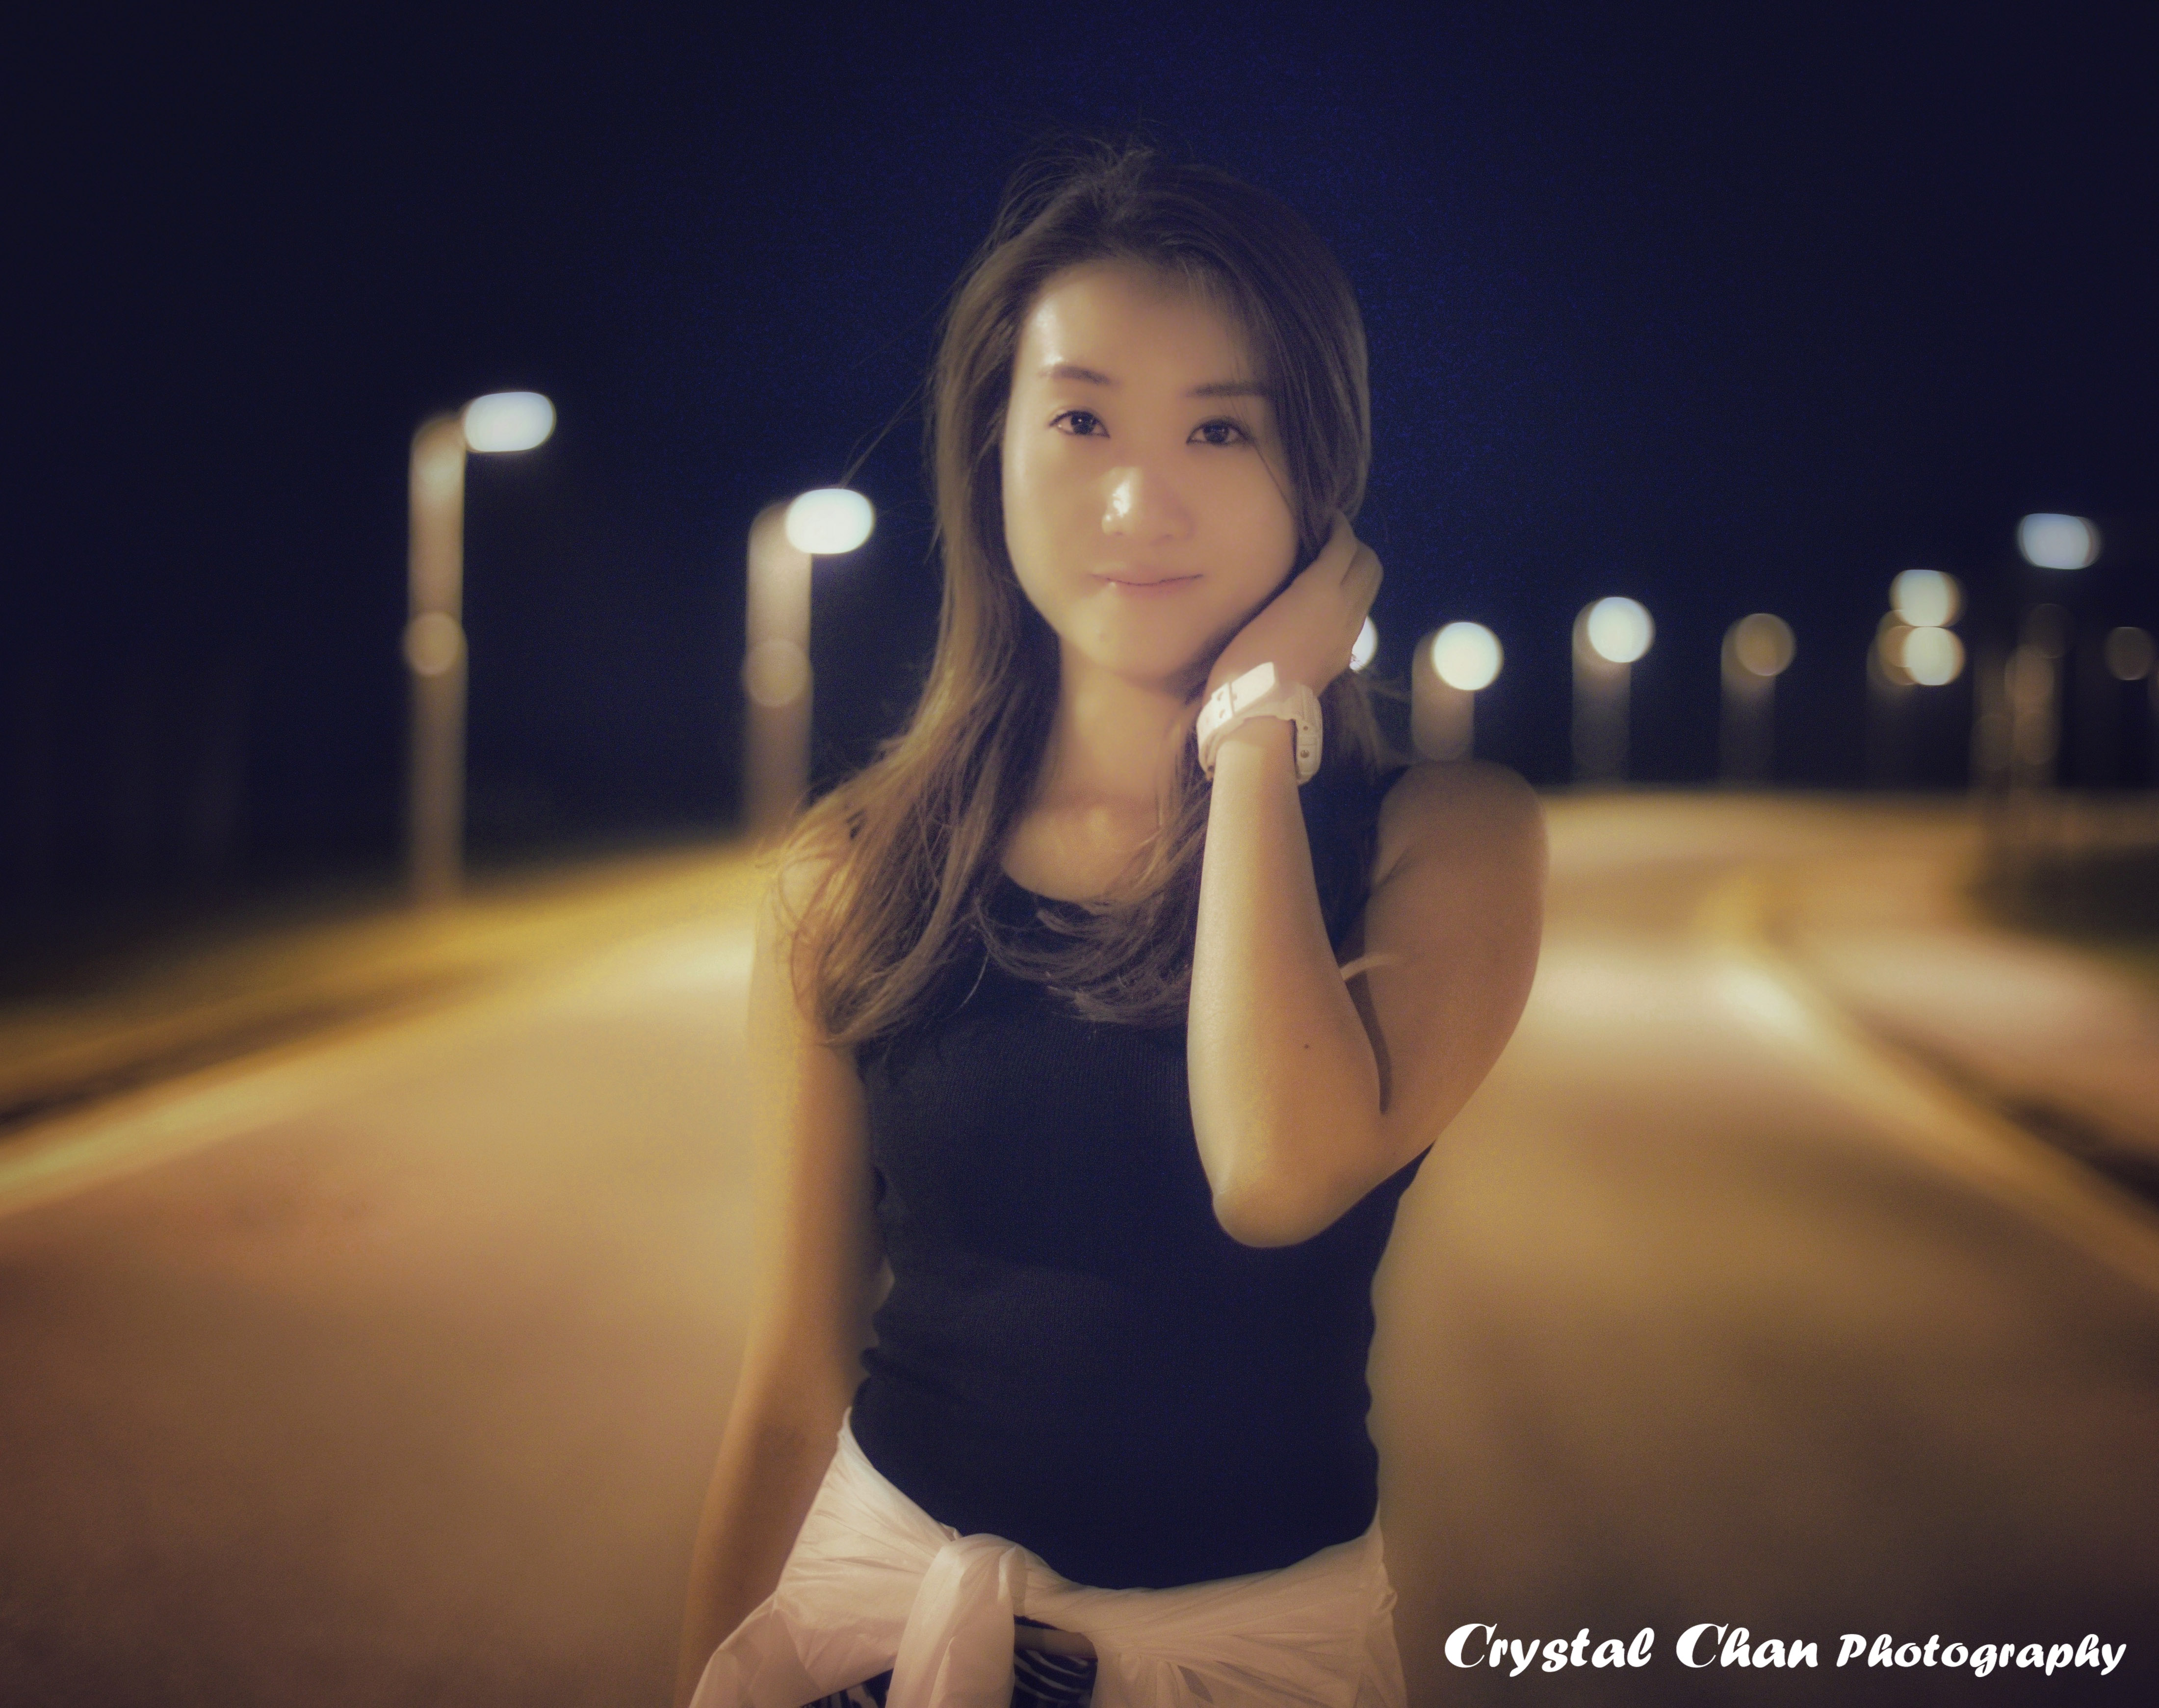 Crystal Chan攝影師工作紀錄: 戶外夜景人像攝影